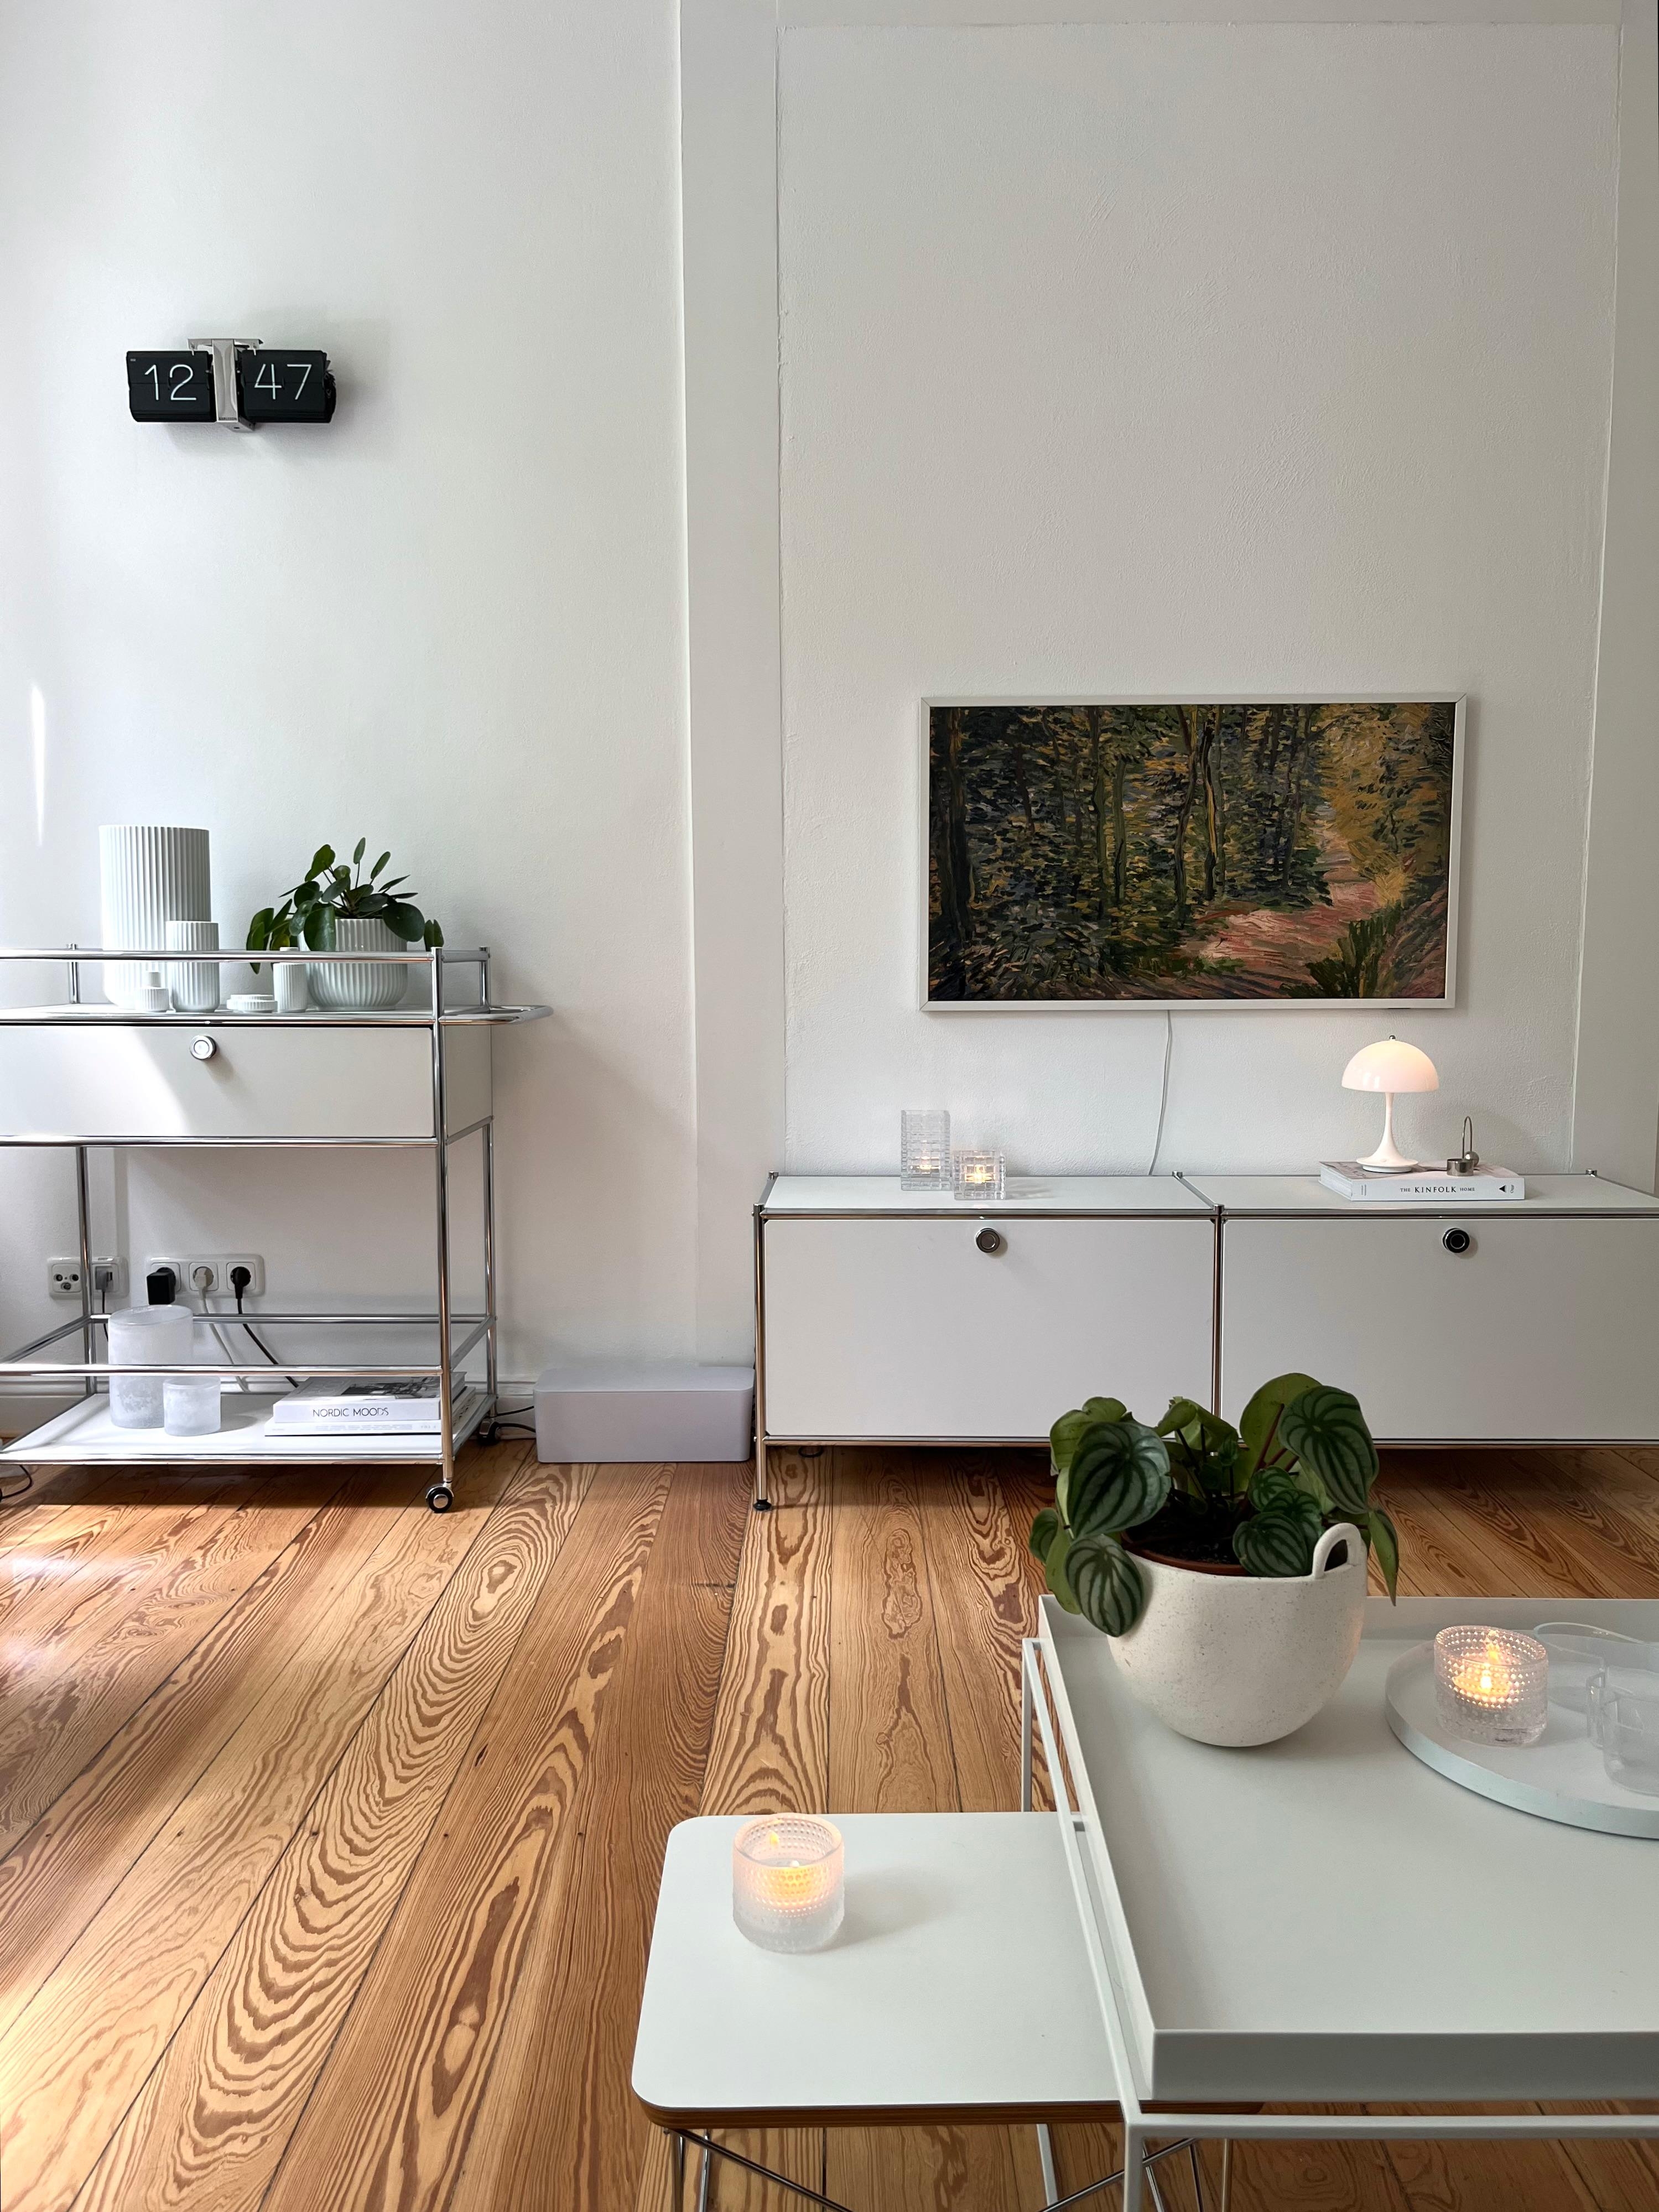 #wohnzimmer #dekoration #minimalismus #skandinavischwohnen #danishdesign